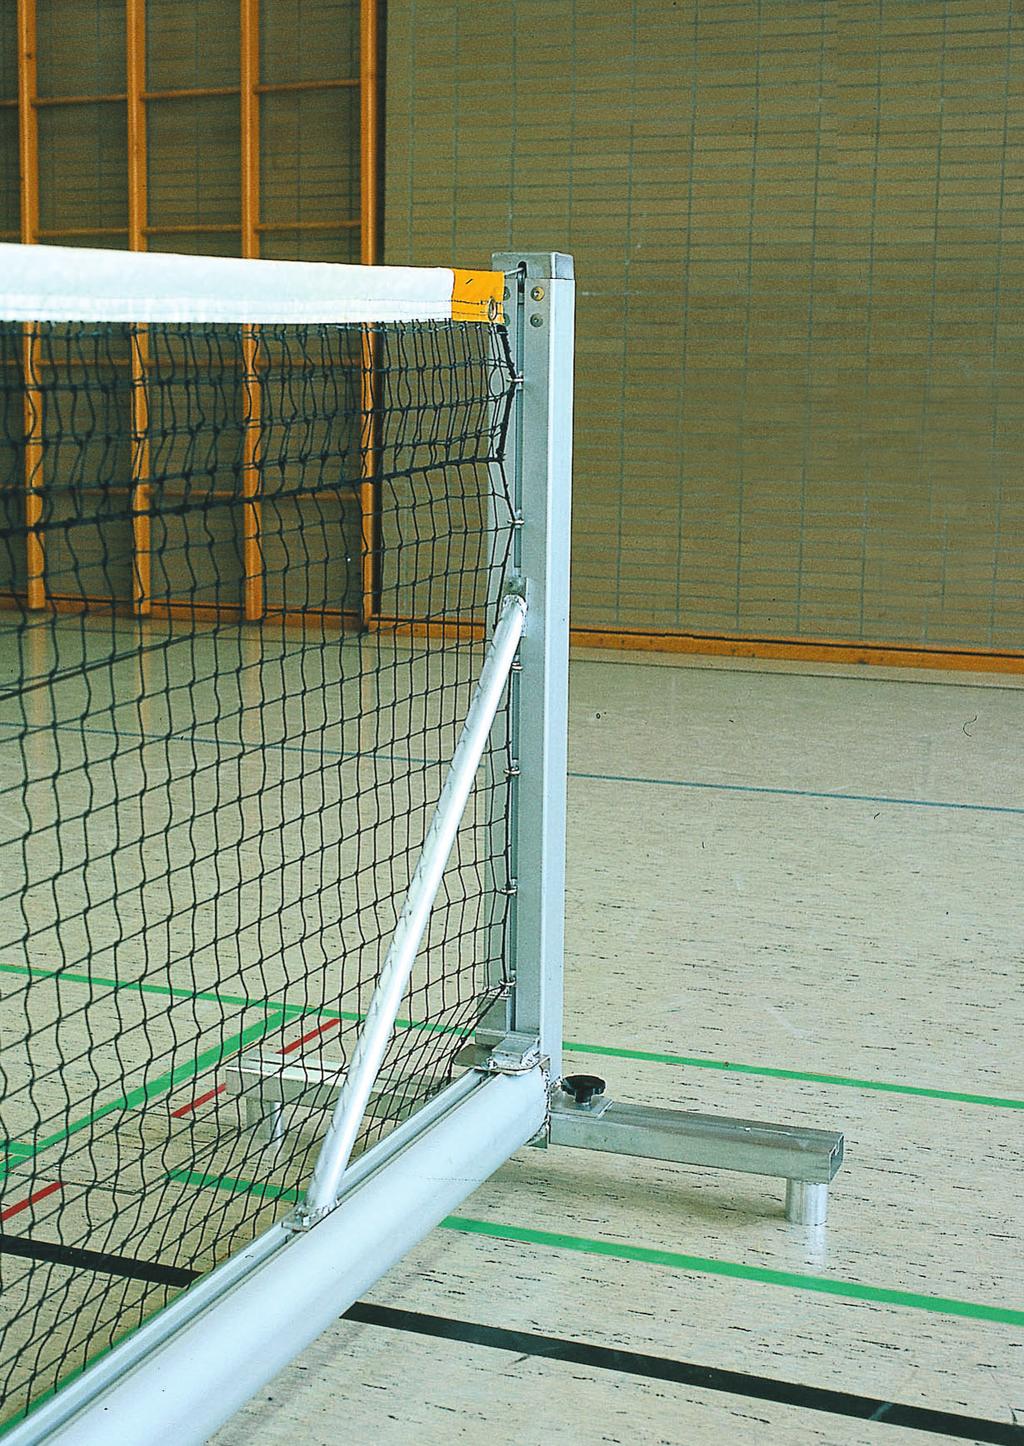 FRITTSTÅENDE TENNIS Solide og holdbare tennisstolper i aluminium med bunnskinne. For steder hvor fastmonterte stolper ikke lønner seg. Med disse kan arealet brukes til flere ulike aktiviteter.